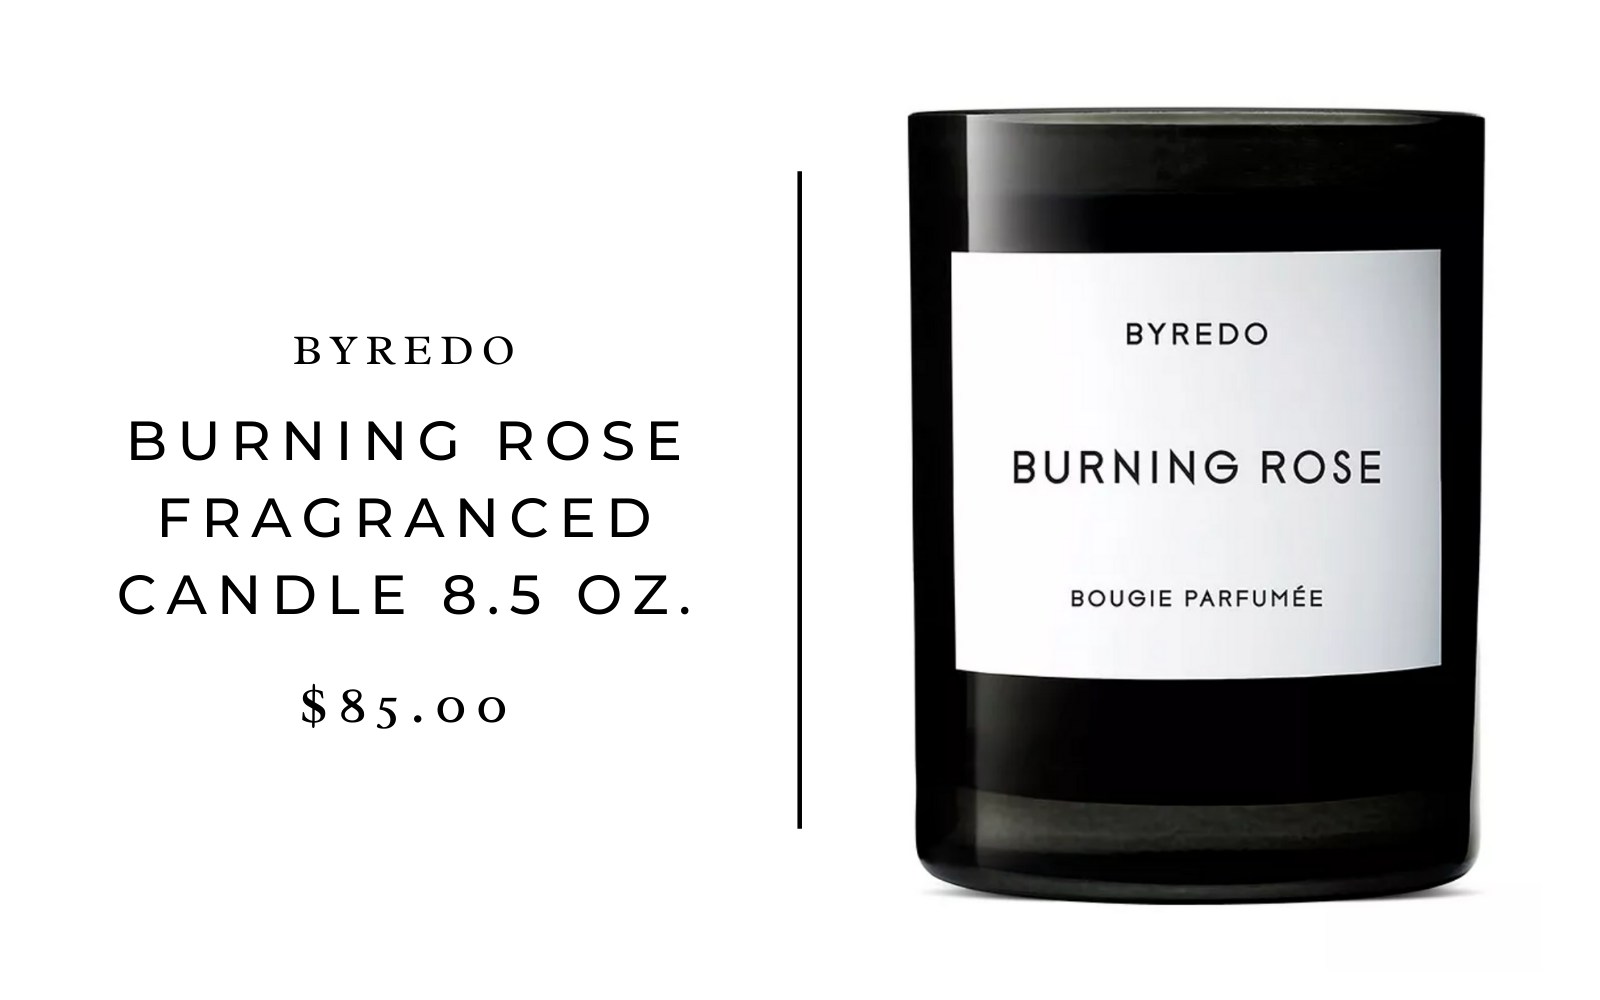 Byredo Burning Rose Fragranced Candle 8.5 oz.